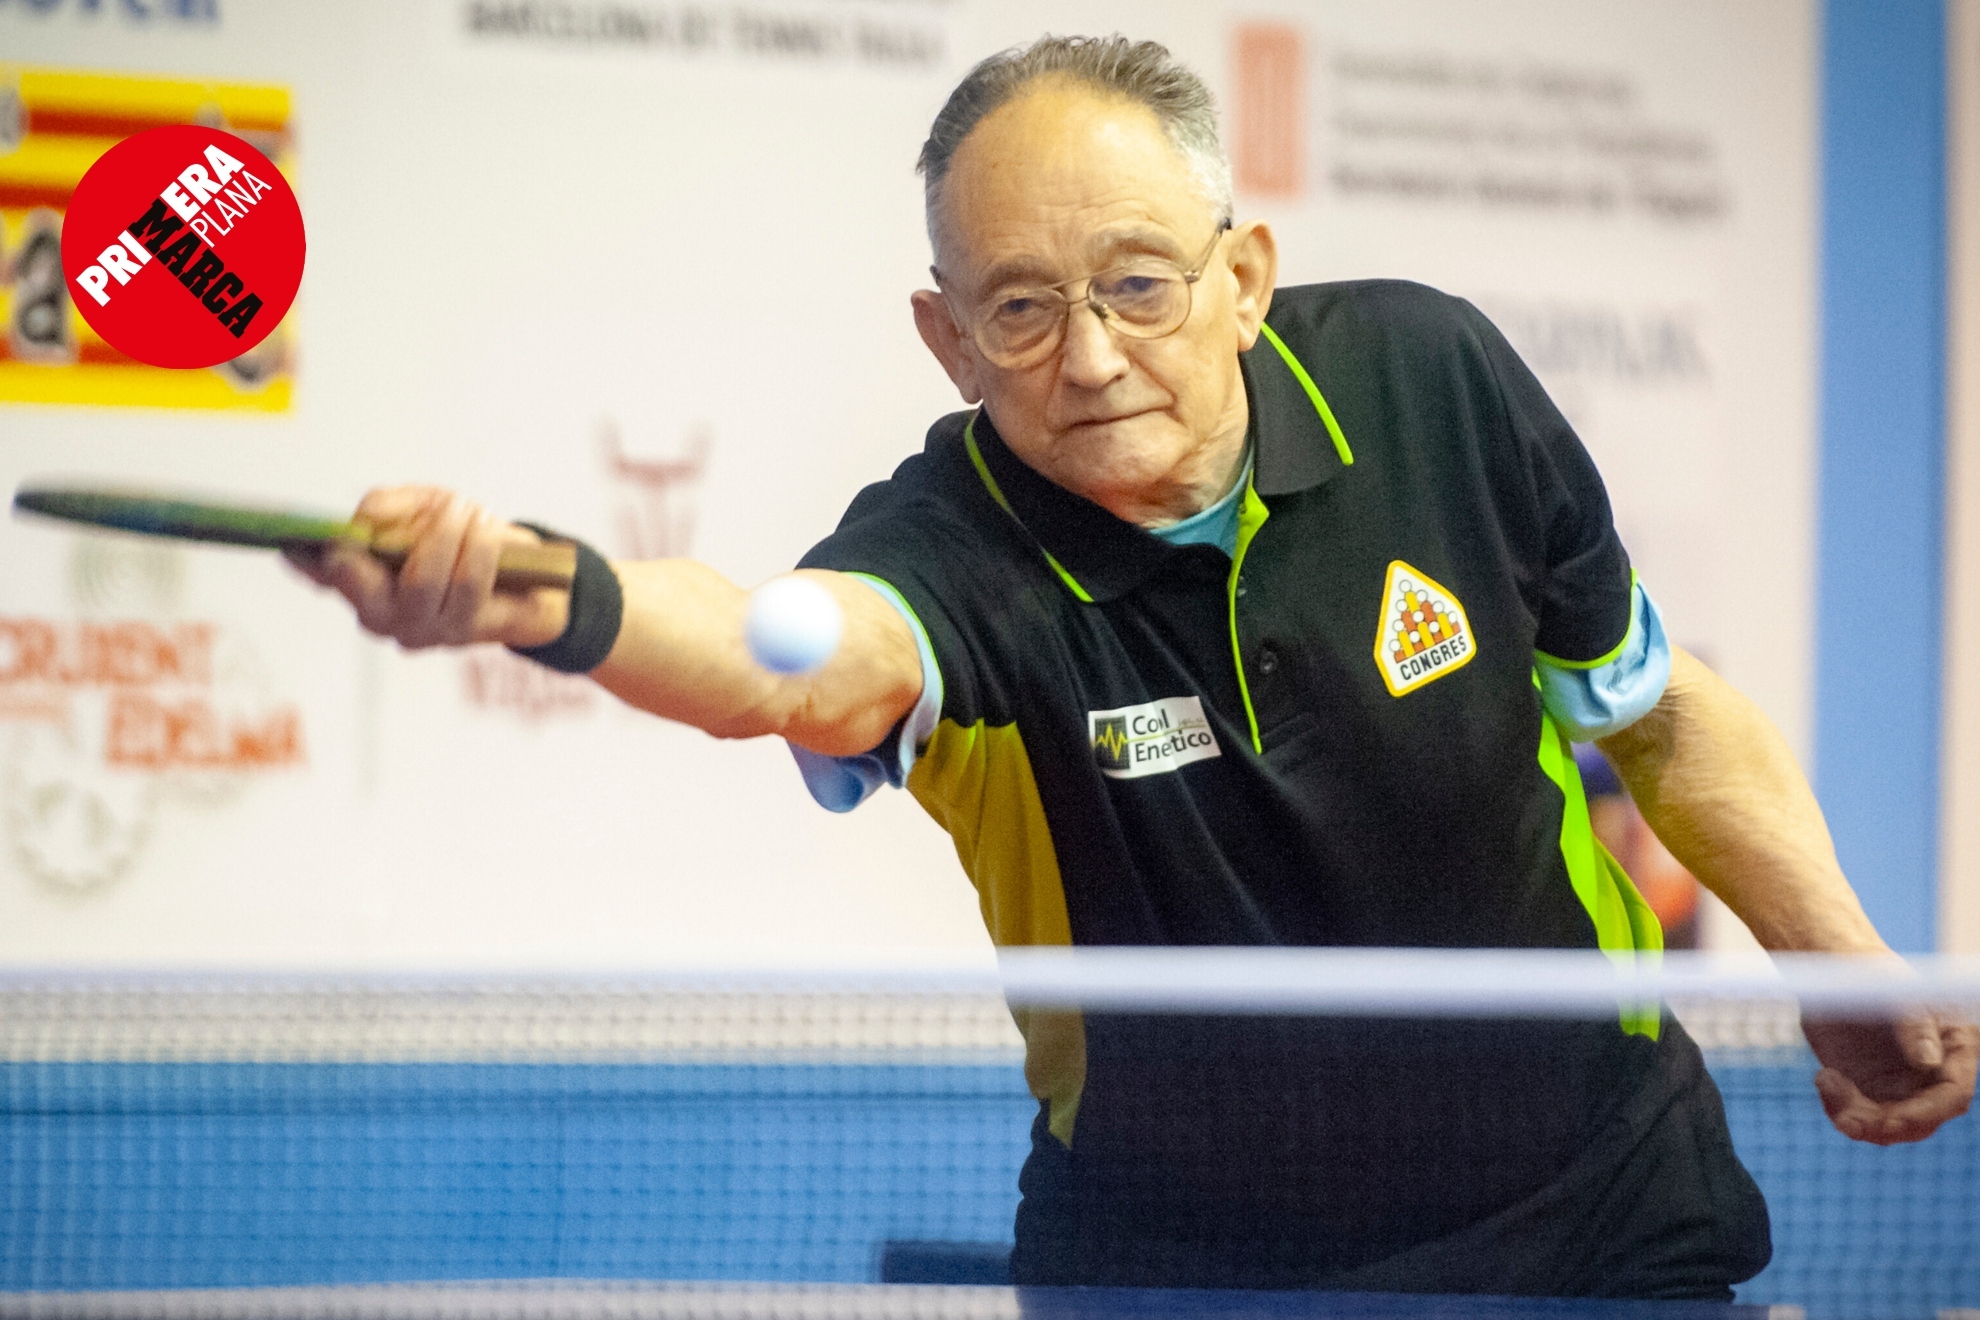 Campeón de Europa de ping-pong con 85 años: "A mi edad hay que moverse"